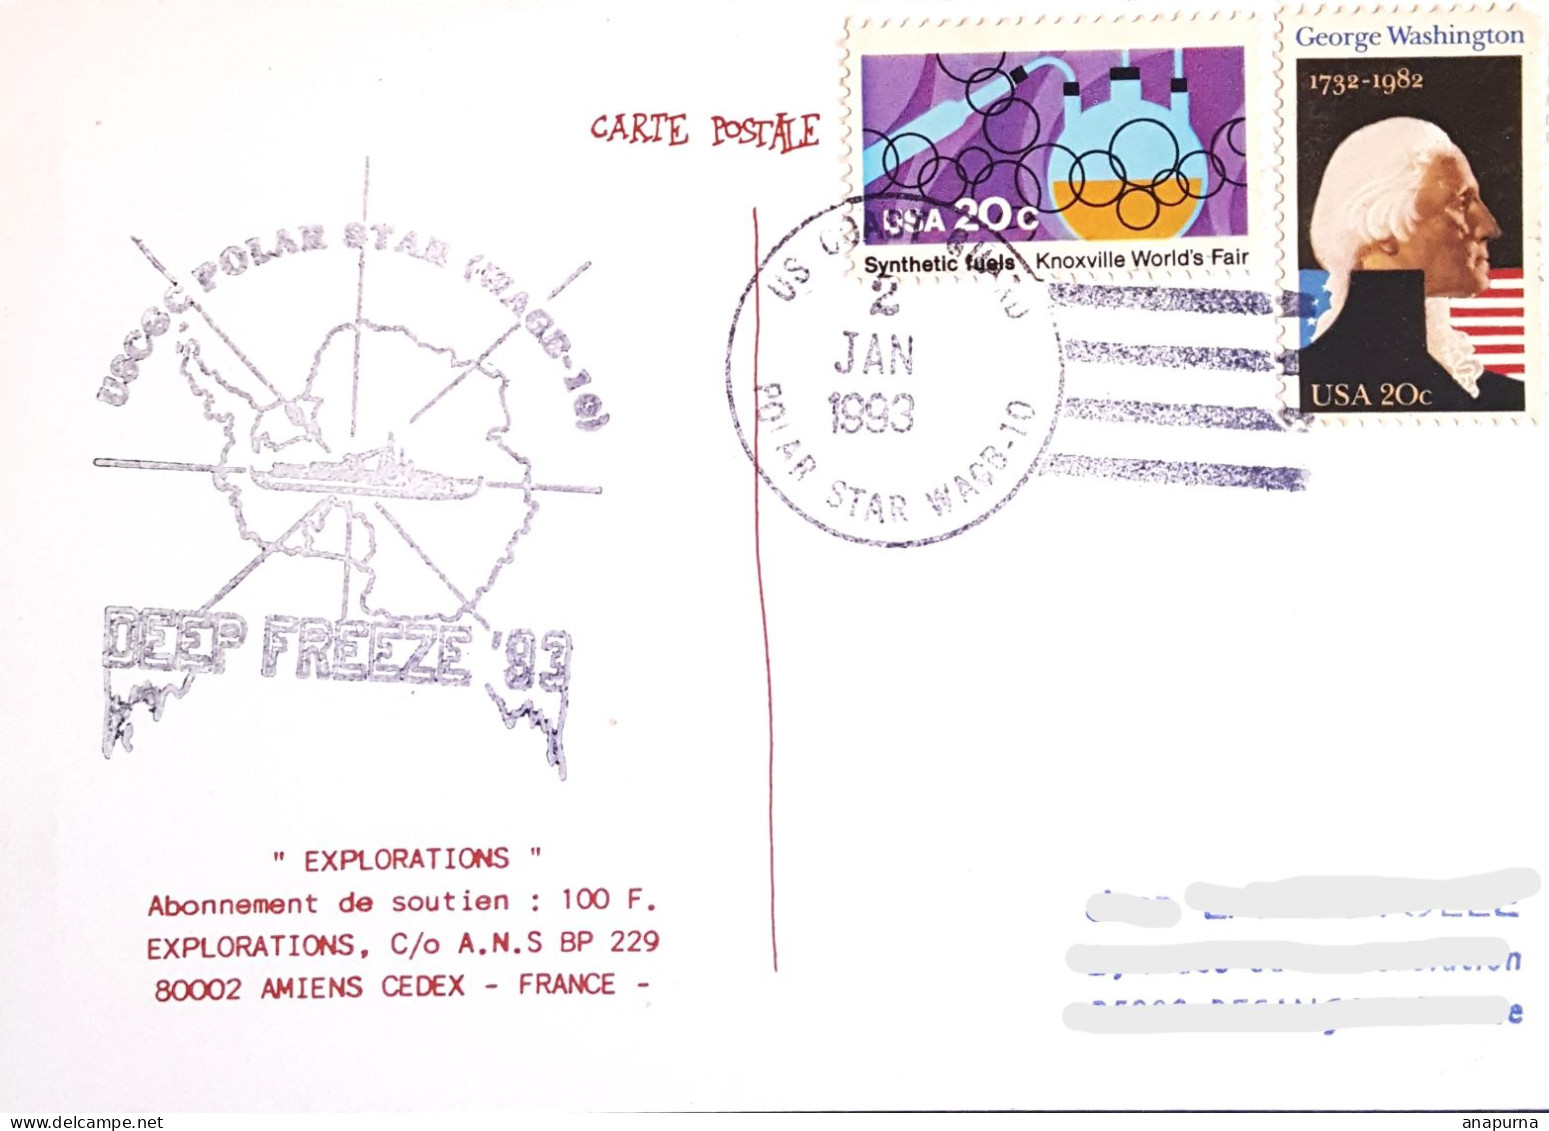 Carte Postale, Posté à Bord Polar Star, Deep Freeze 93, Antarctic, Antarctique, Polaire, Expédition - Research Programs